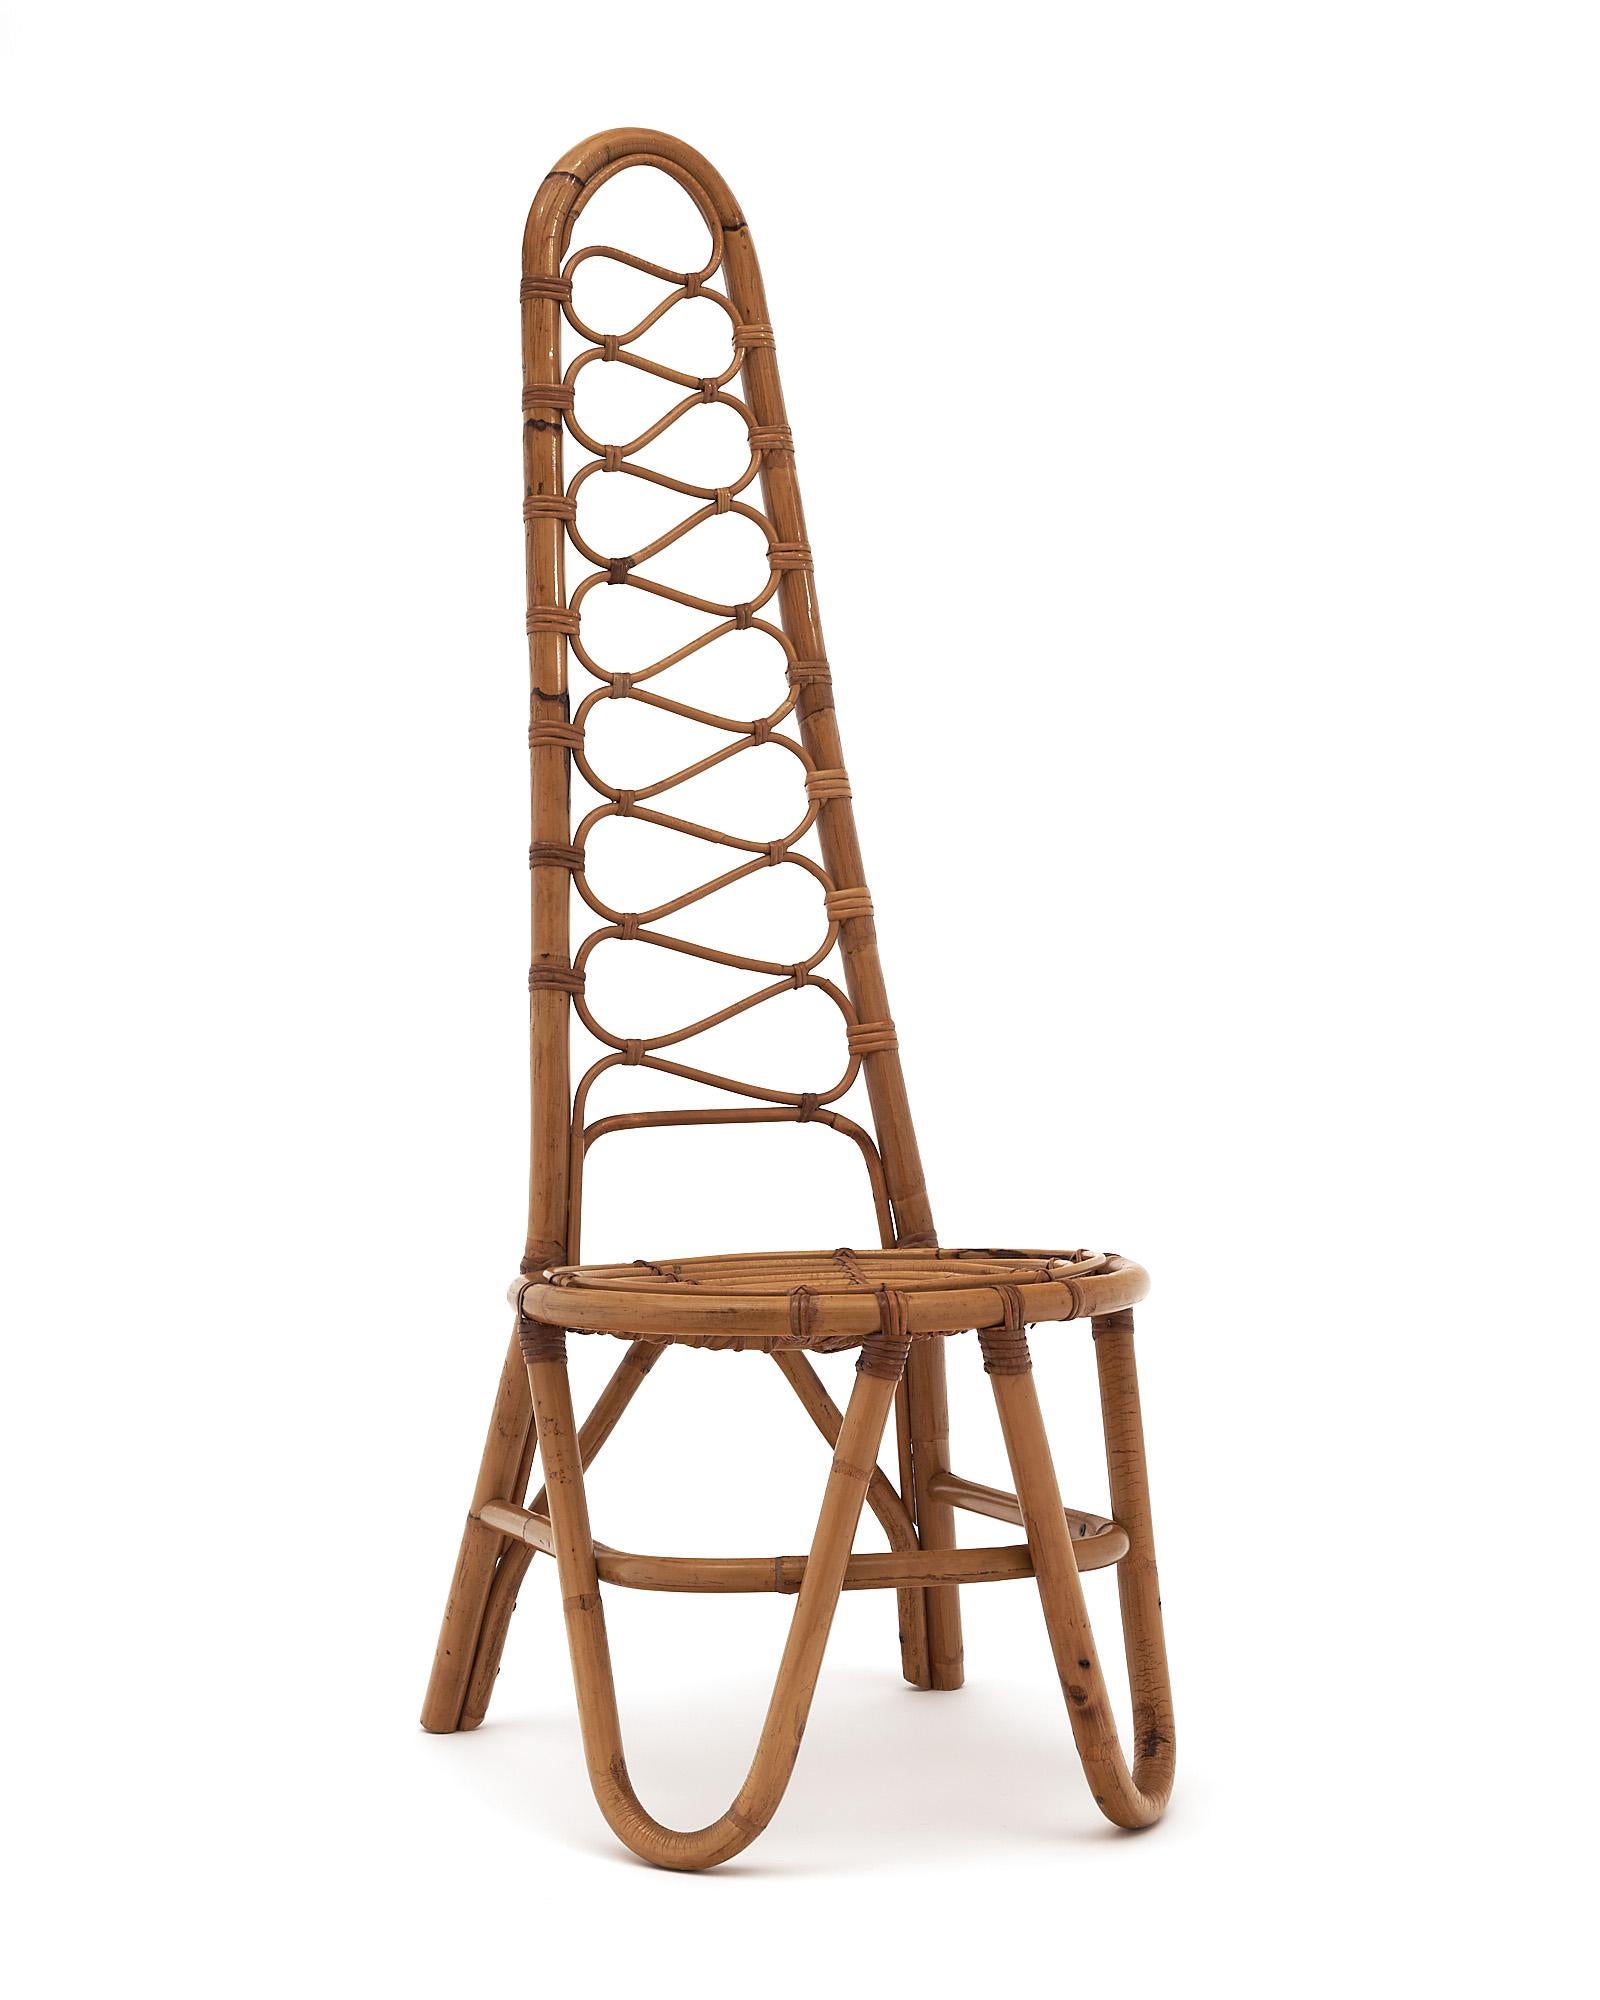 Chaise d'appoint vintage de France en bambou. Nous adorons le design unique et les proportions de cette pièce remarquable.